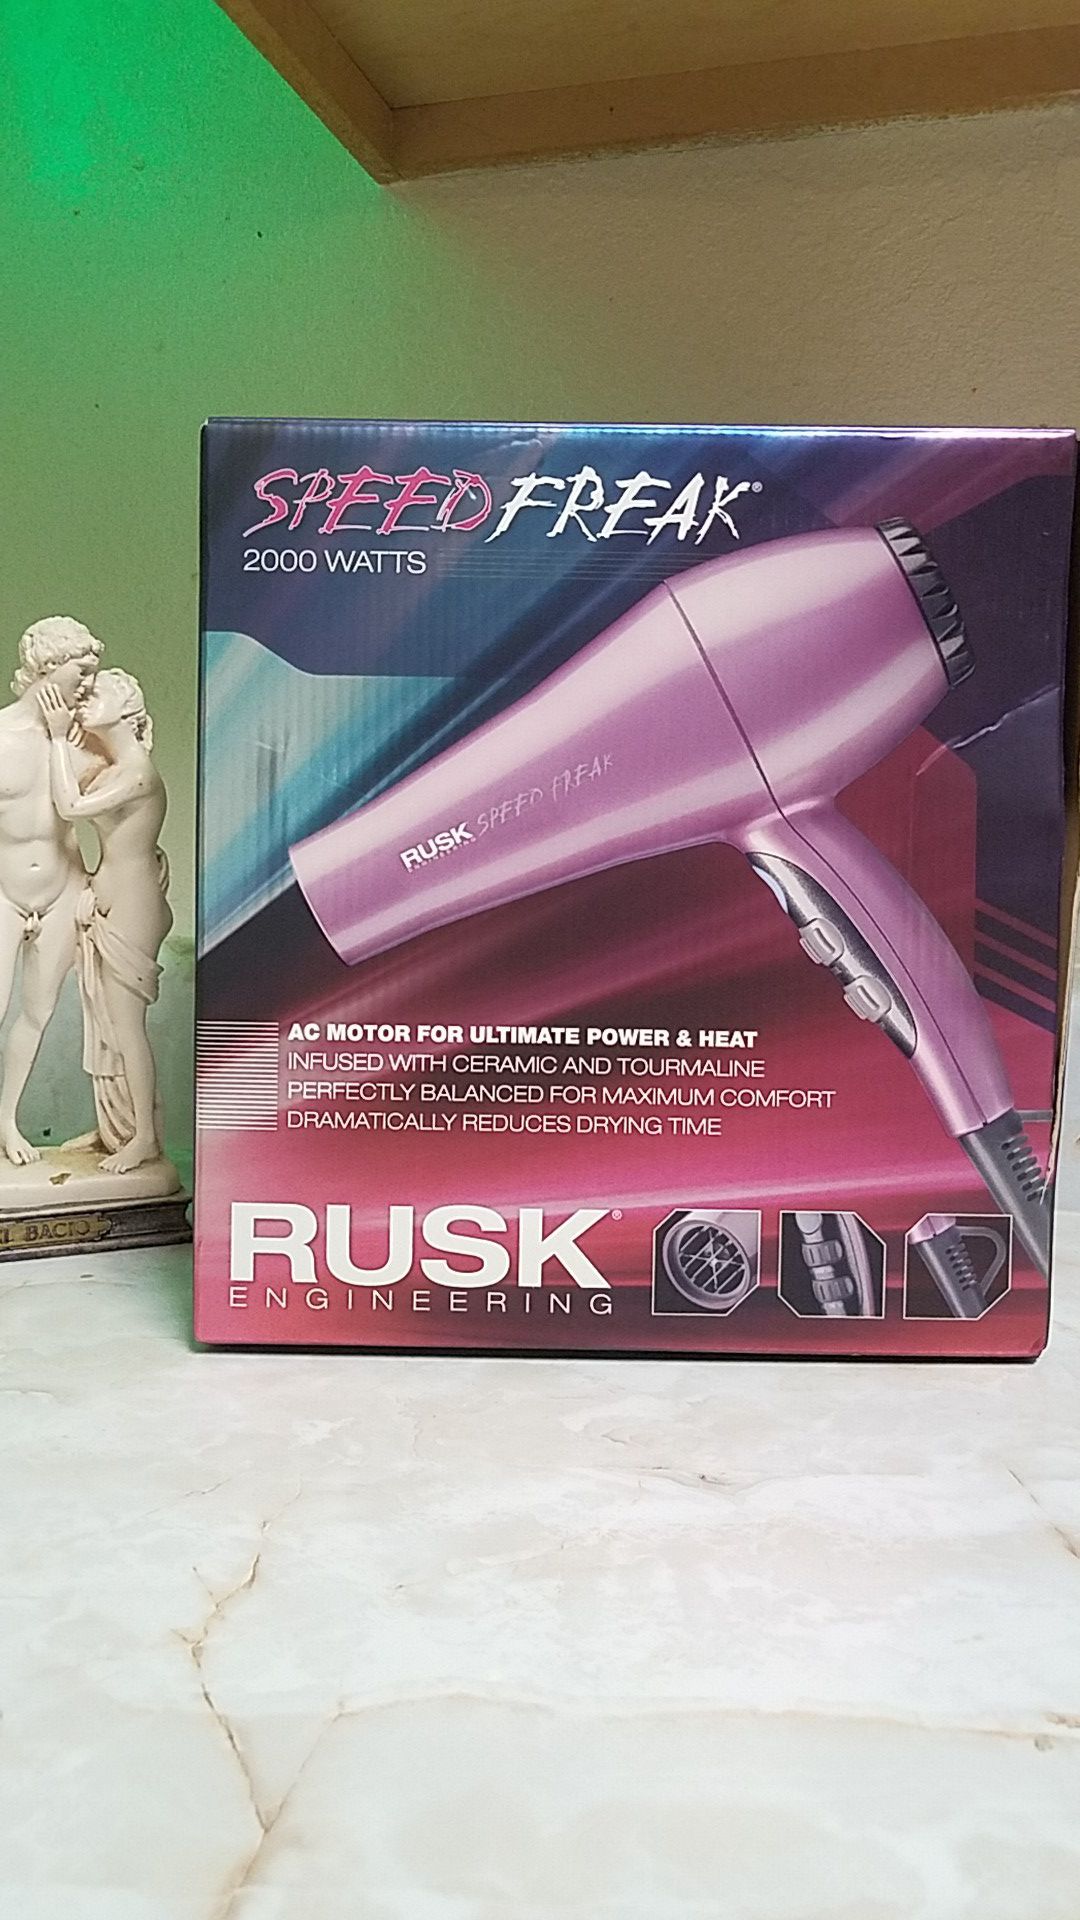 RUSK Engineering Speed Freak 2000 Watts Hair Dryier